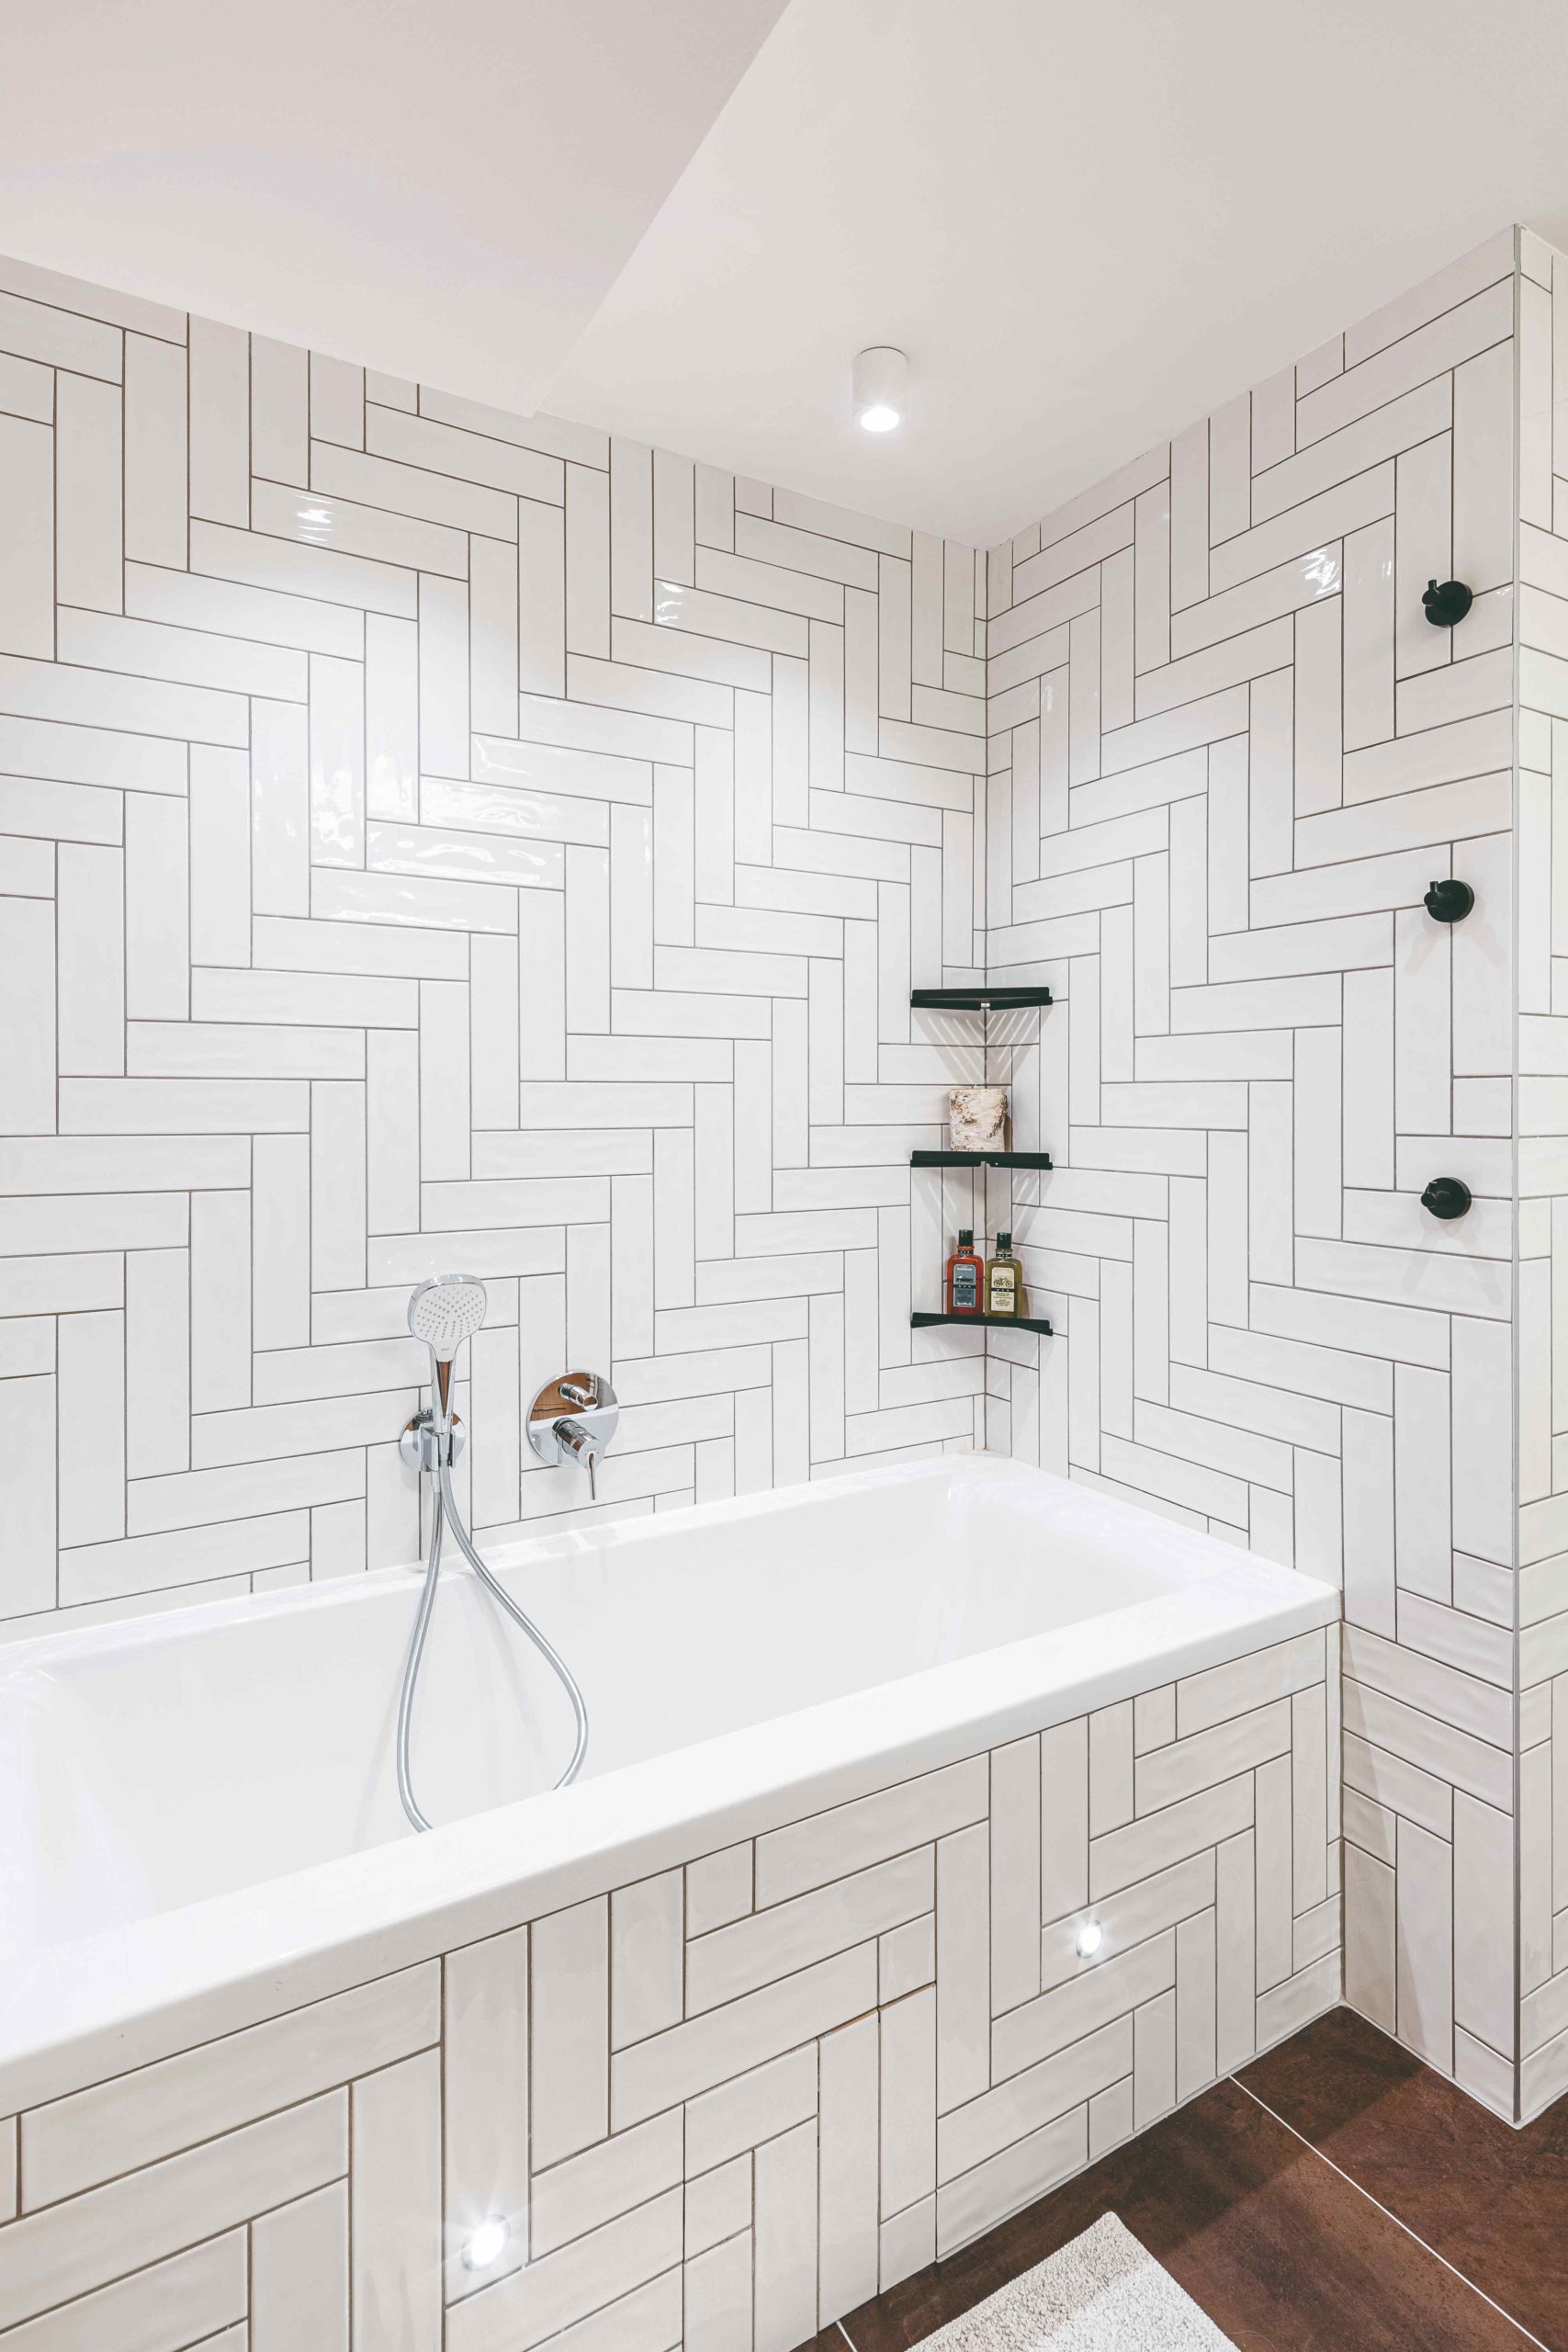 Bílá koupelna s geometrickým vzorem